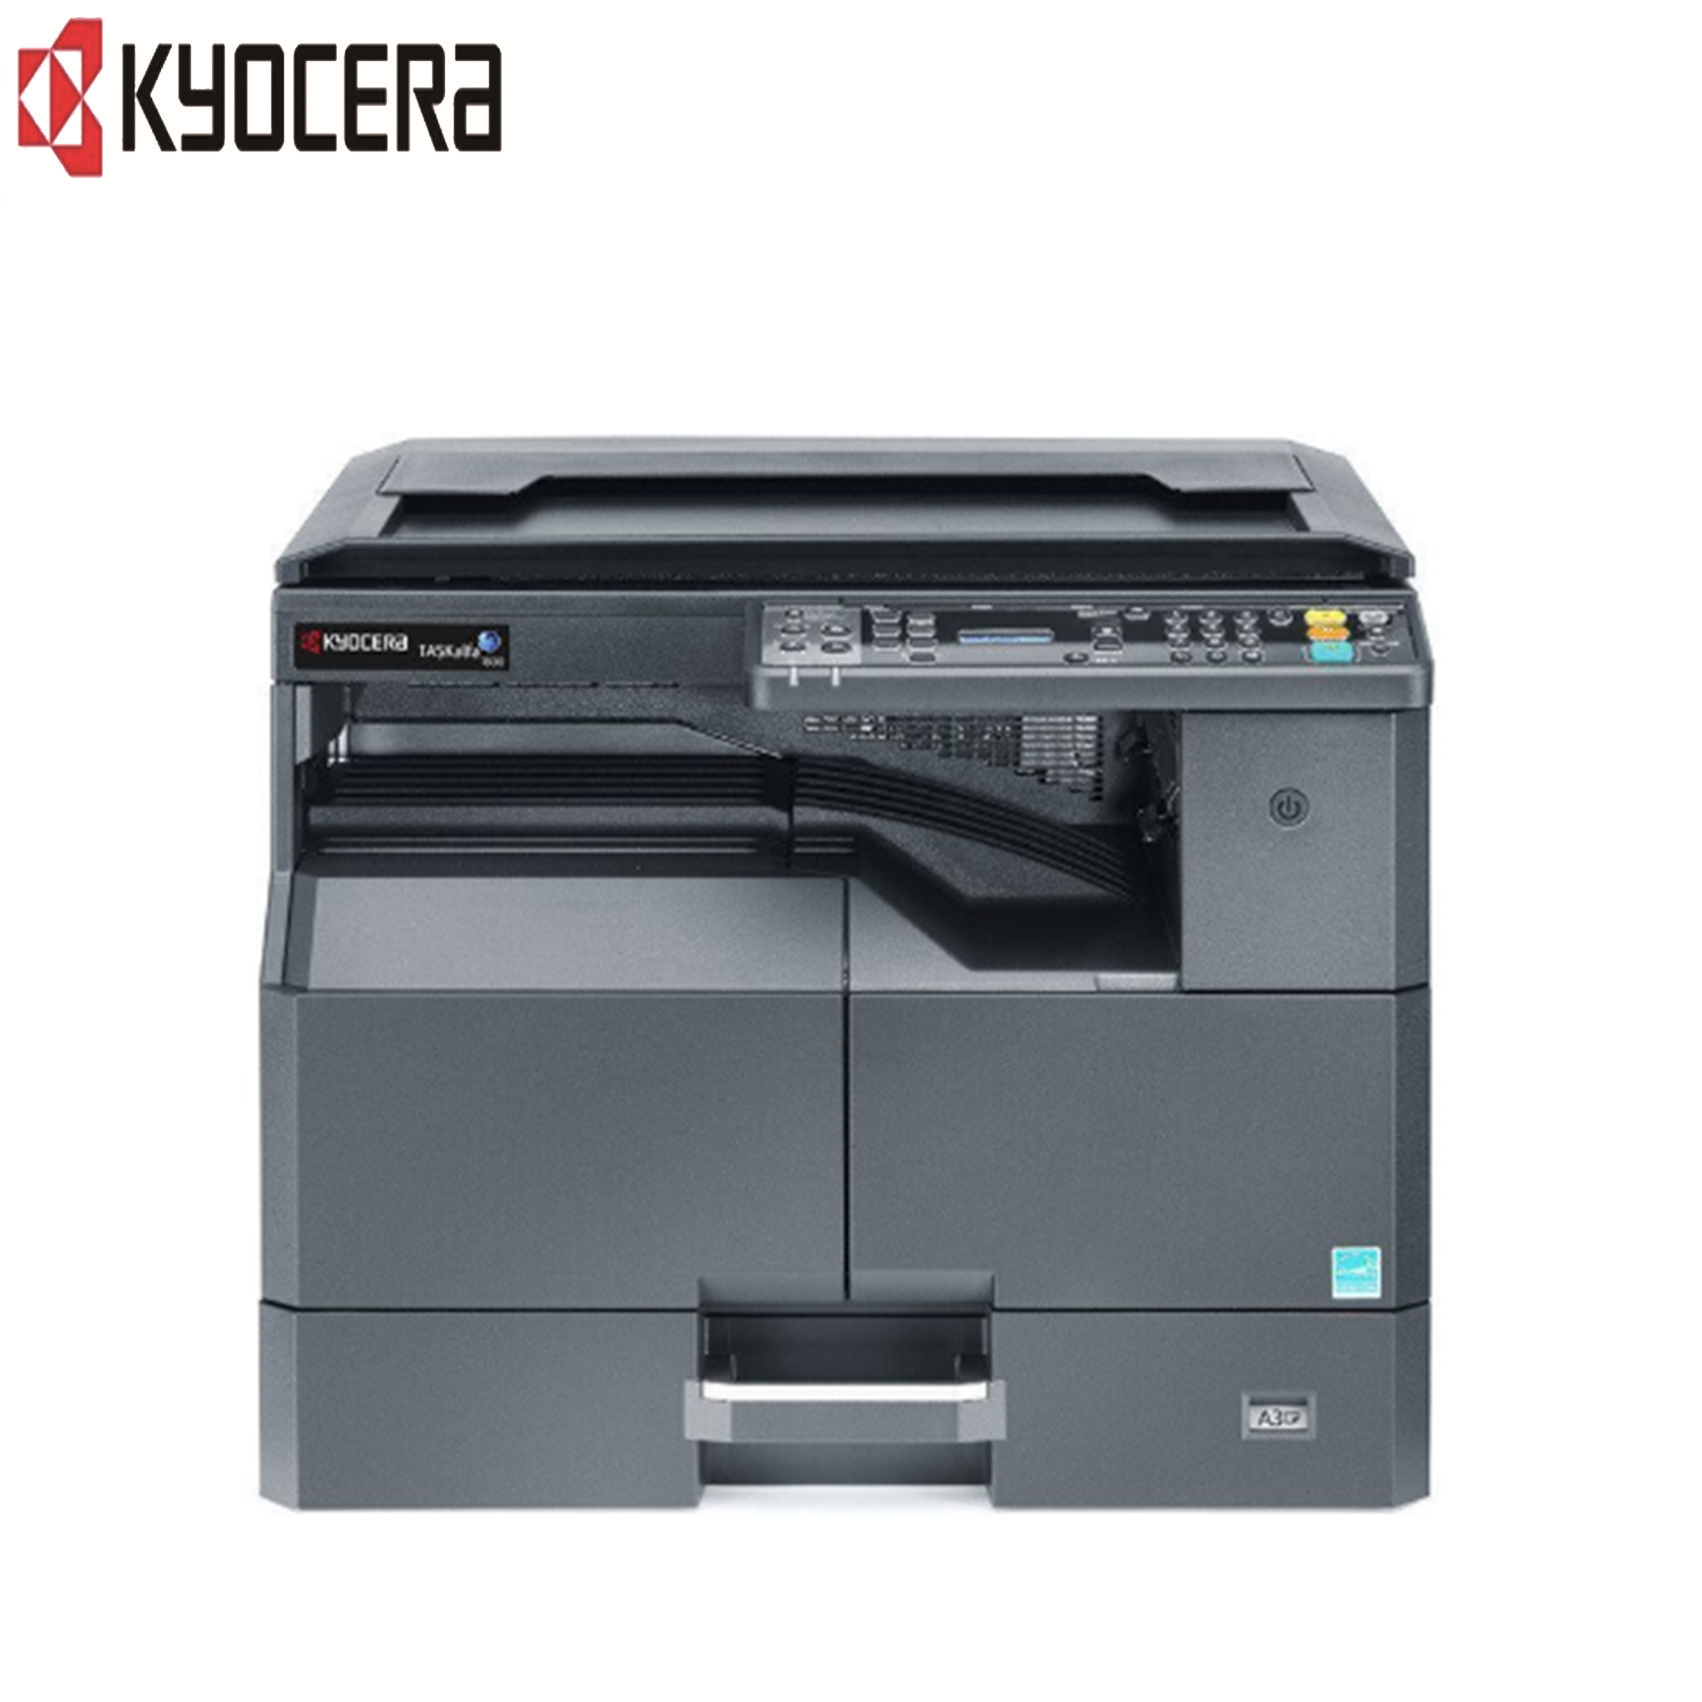 京瓷(KYOCERA)2011 黑白多功能复合机 打印/复印/扫描